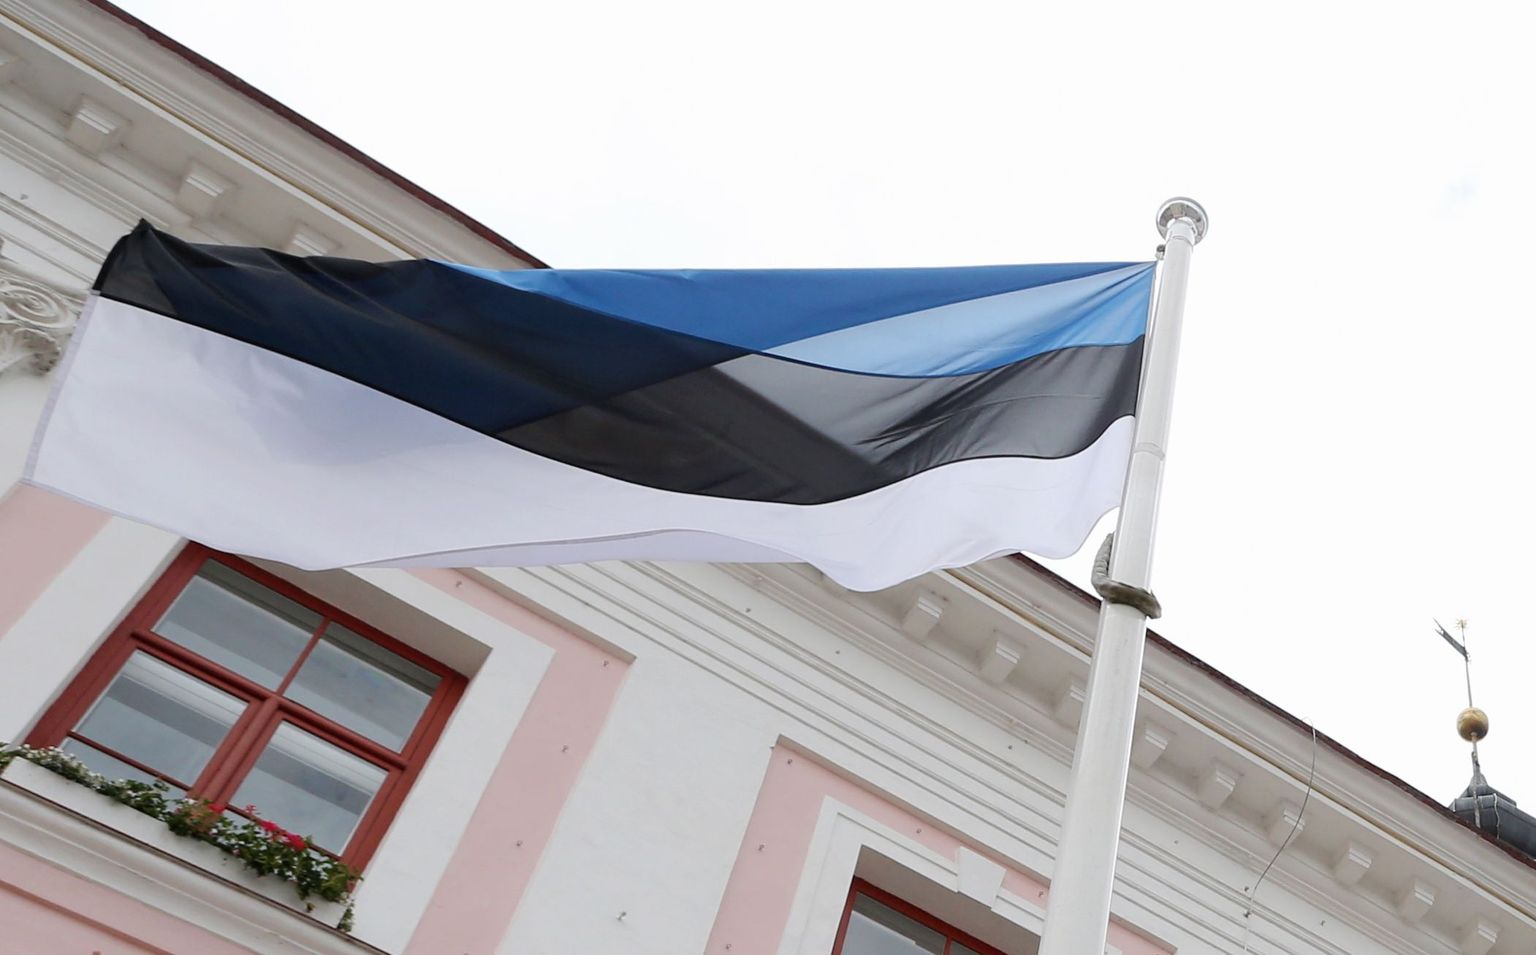 Eesti lipp Tartu raekoja ees.